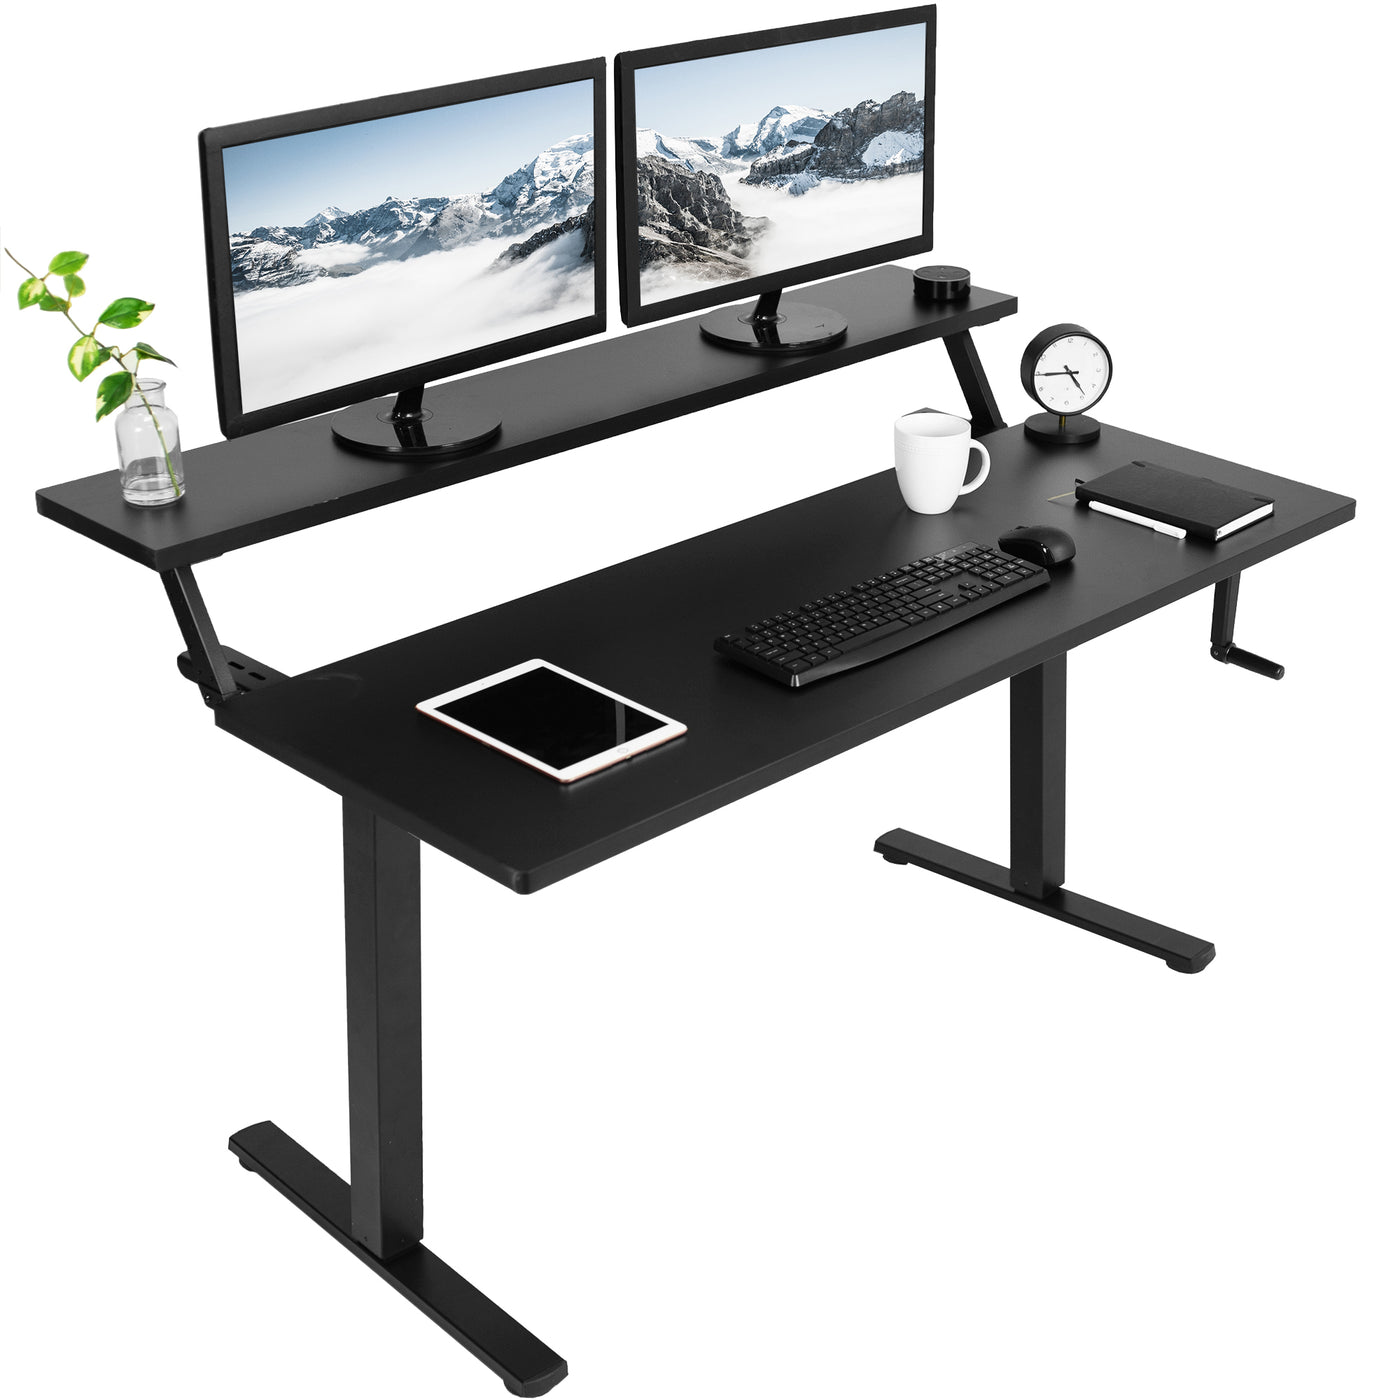  Innovative 2-tier split top design of a modern black height adjustable desk.